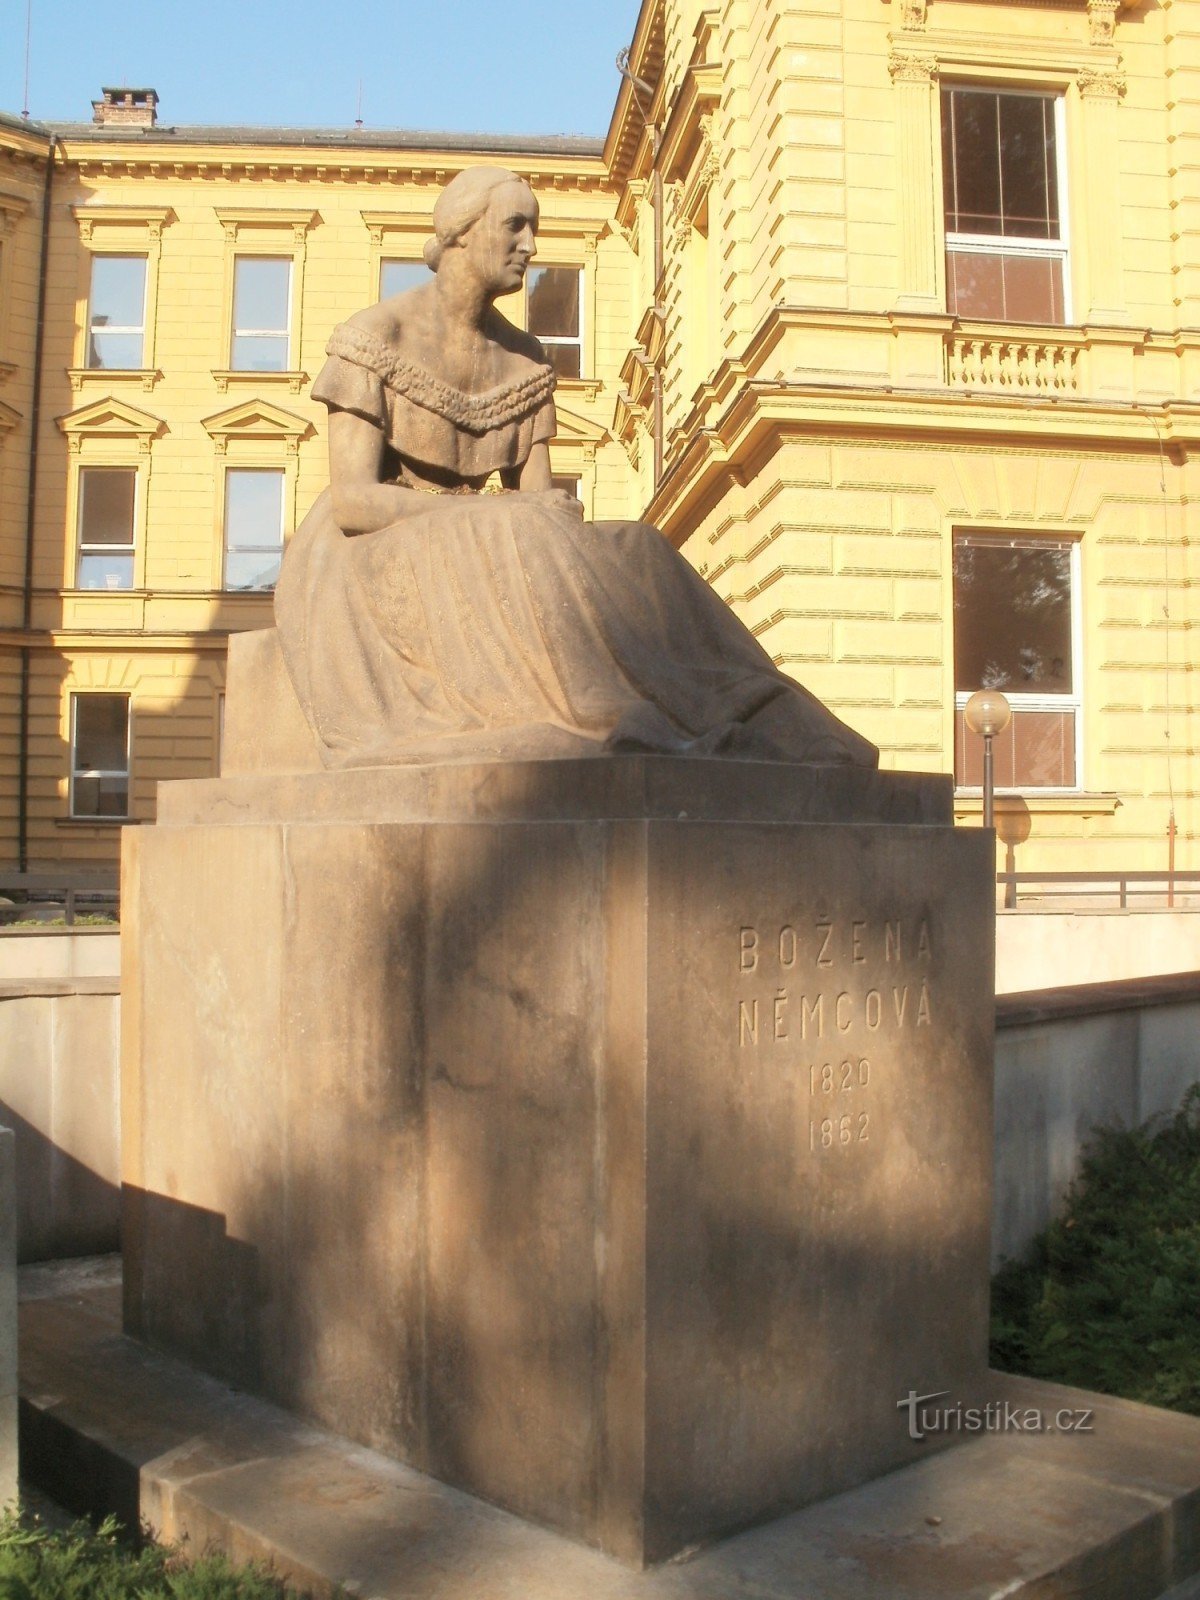 Hradec Králové - Božena Němcová szobra